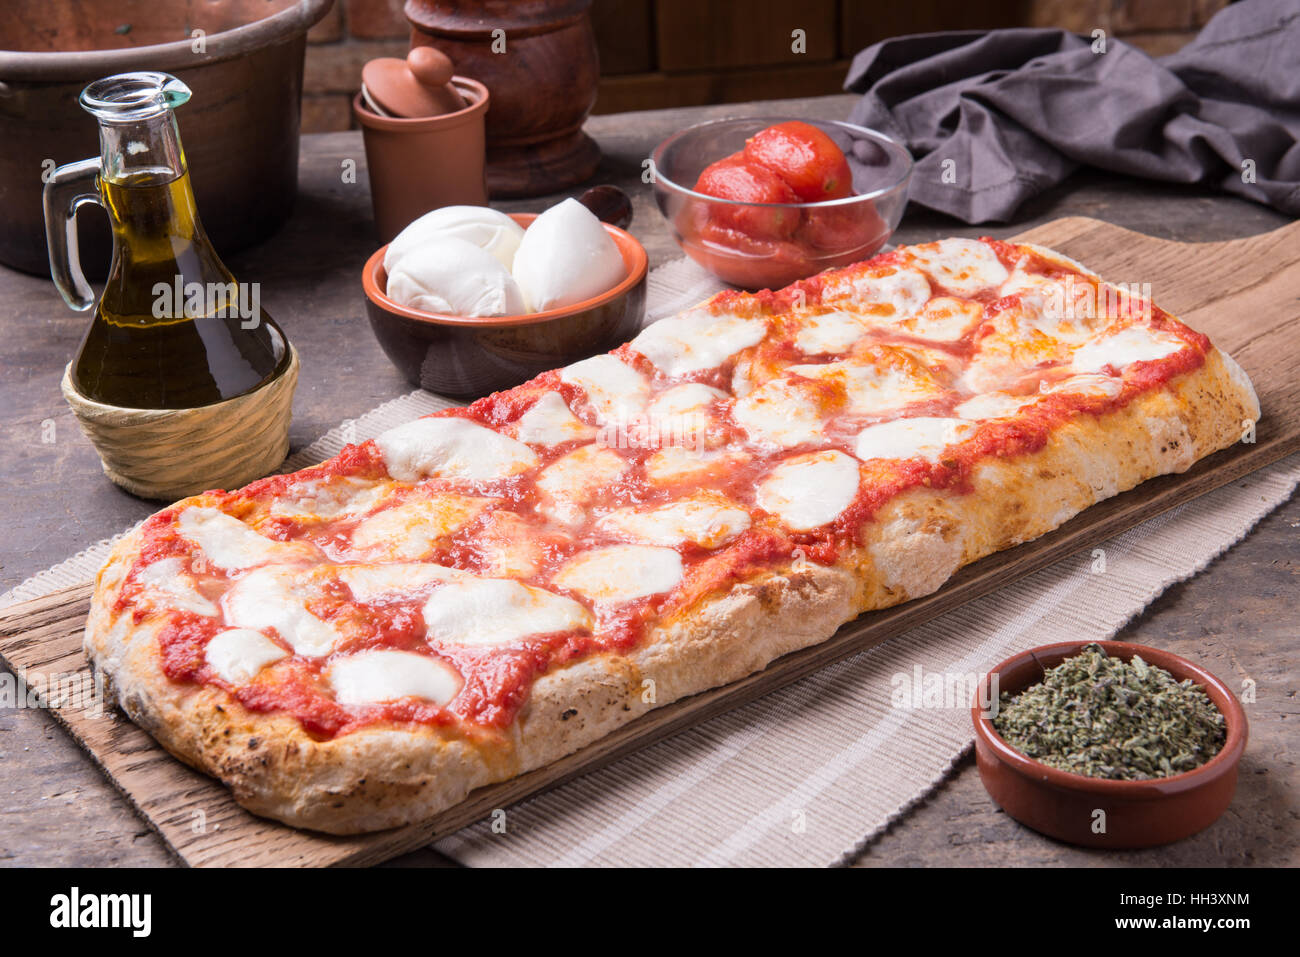 Immagini Stock - Pizza Di Pane Su Una Piastra D'acciaio. Image